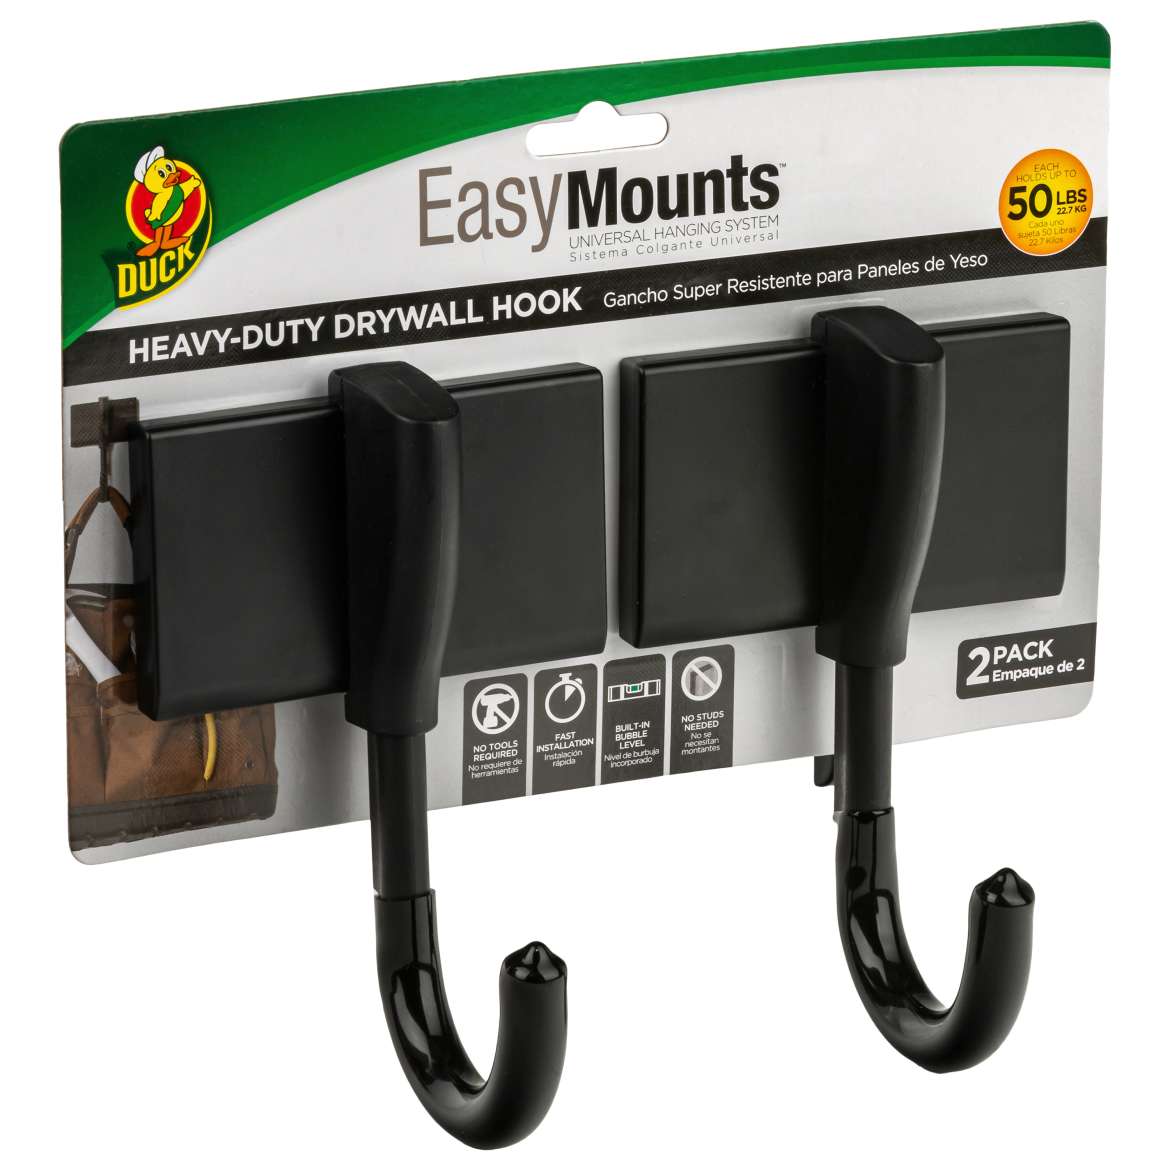 Duck® EasyMounts® Heavy-Duty Drywall Hooks